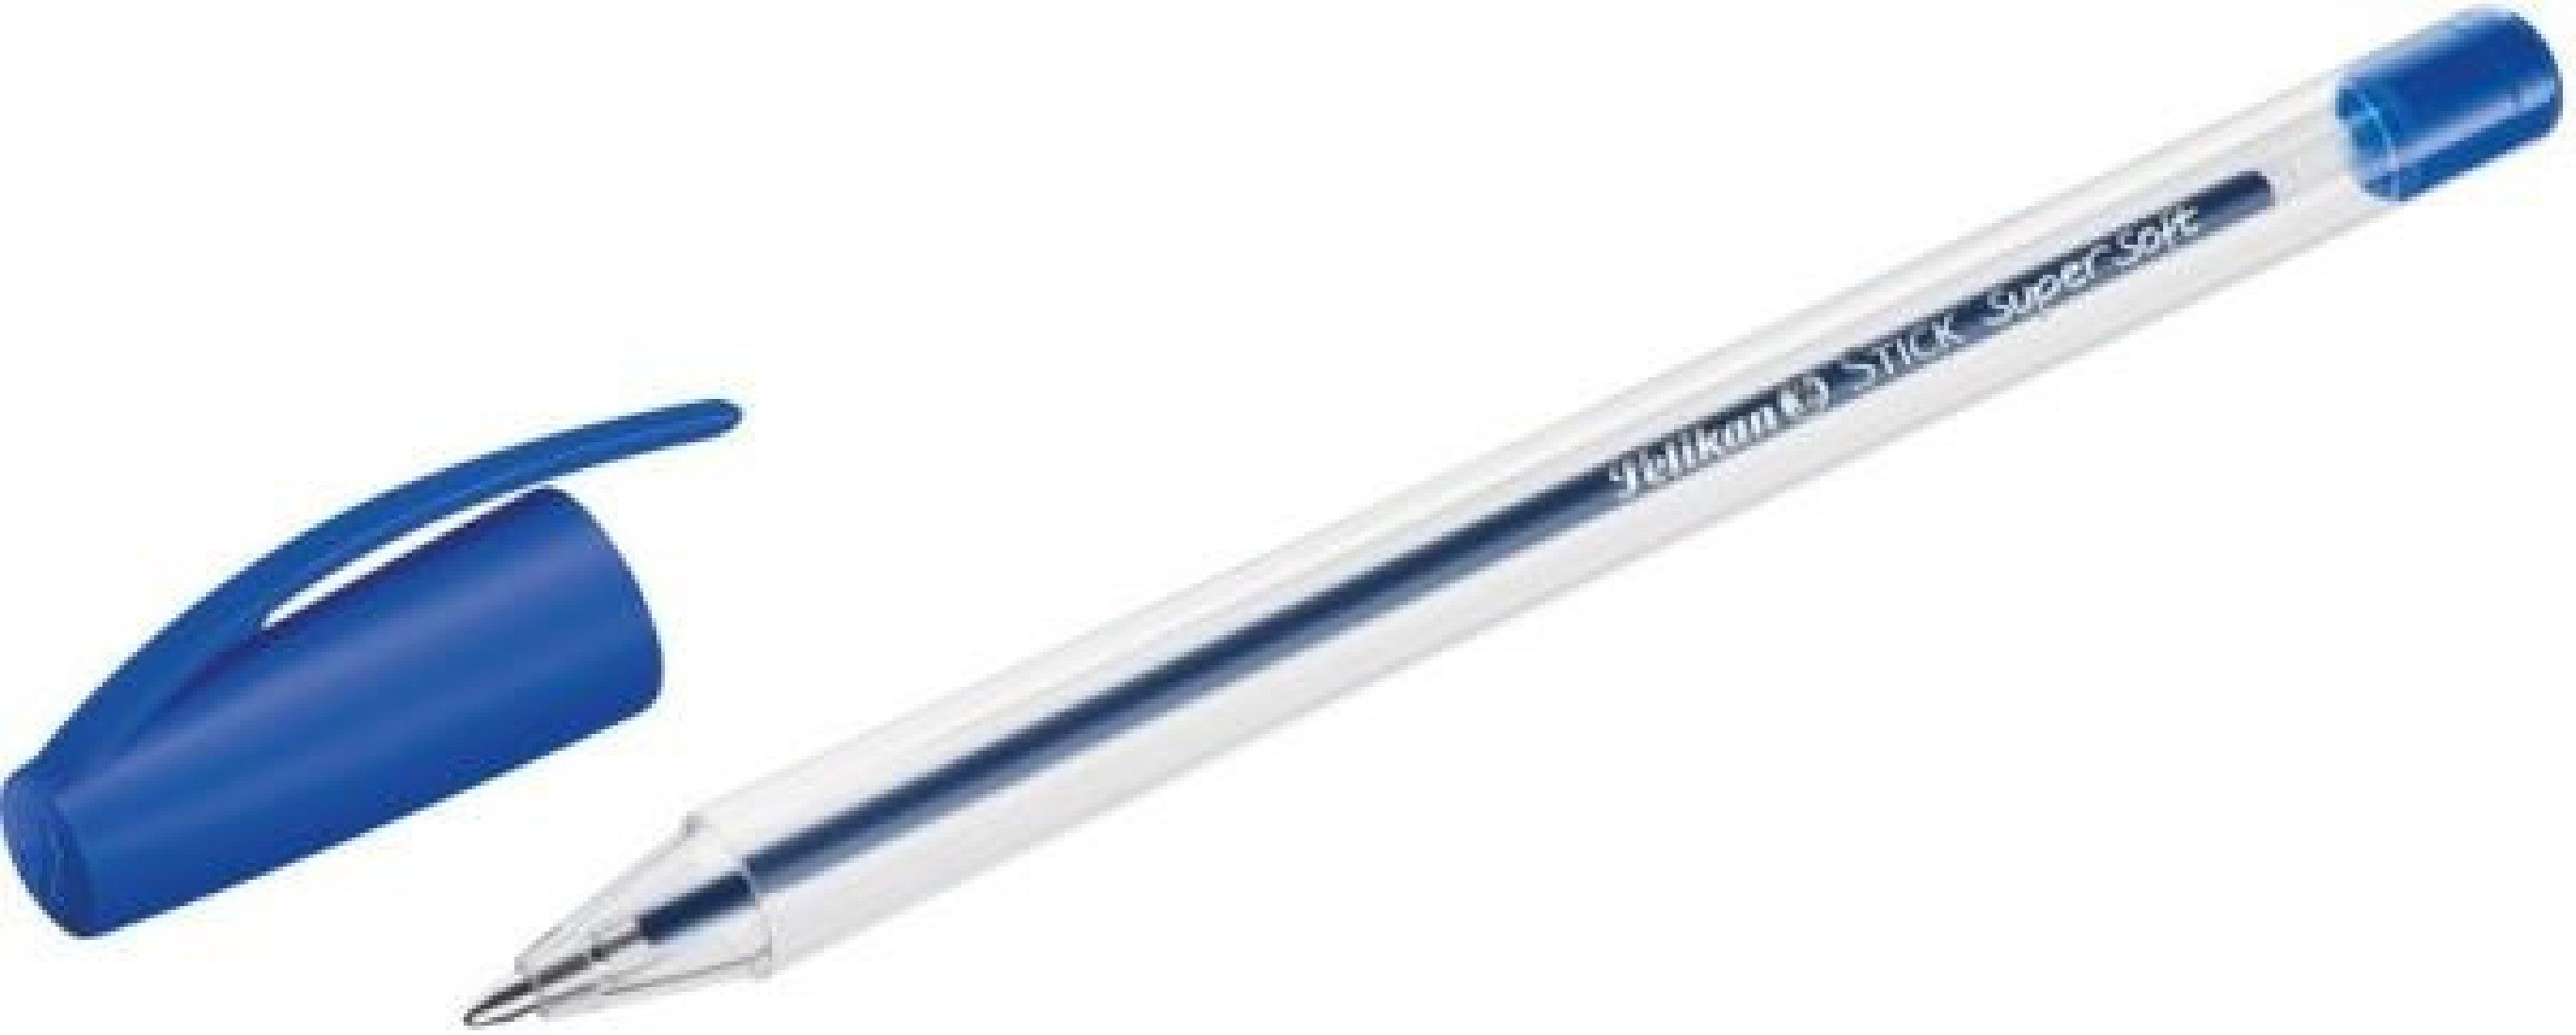 Ручка стик. Ручка шариковая шариковая Пеликан. Ручки голубые Soft. Стик ручка для пиксарта.